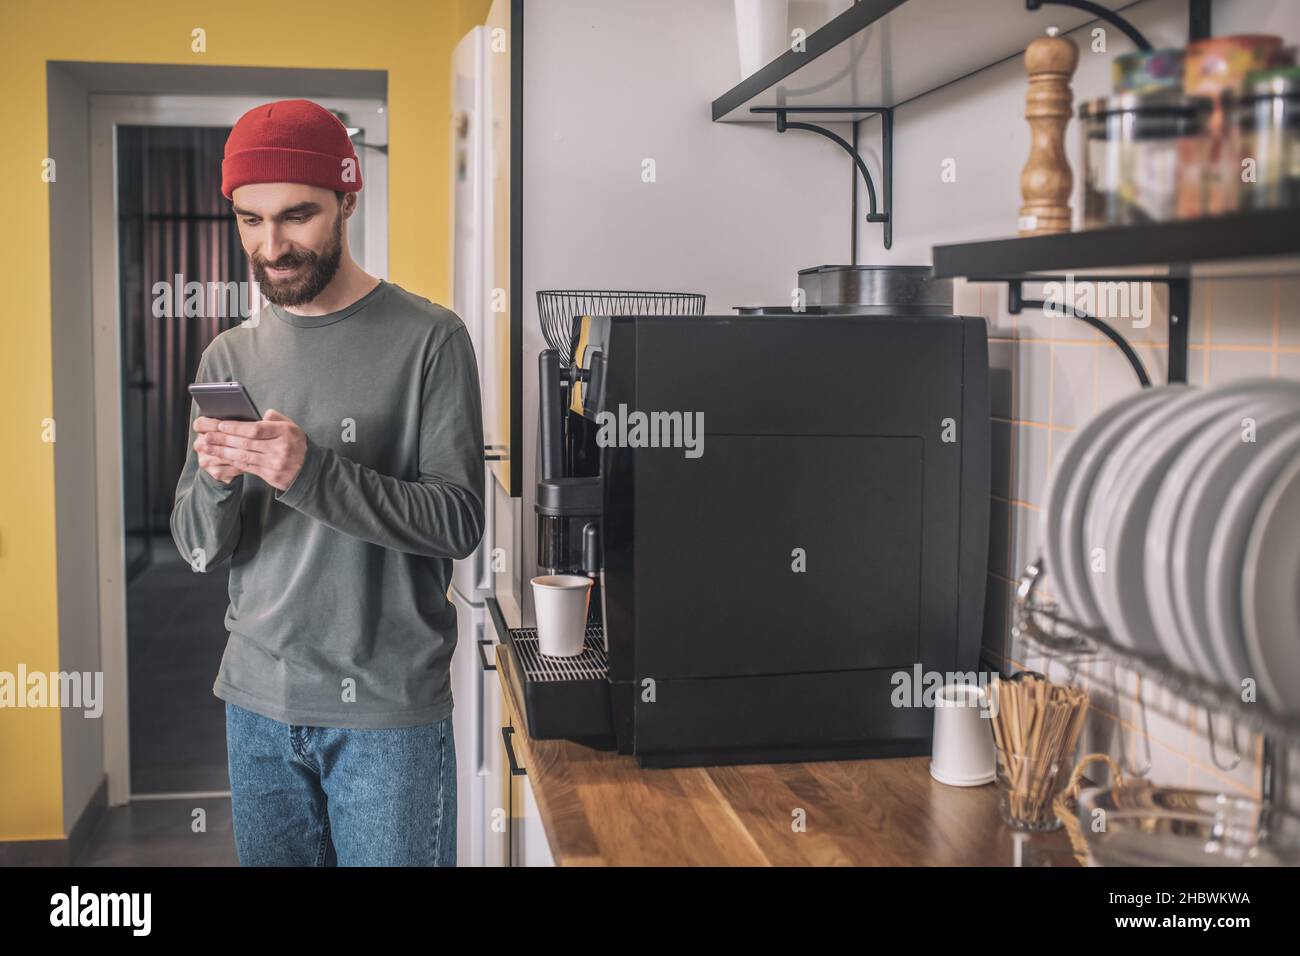 Homme regardant le smartphone près de la machine à café Banque D'Images